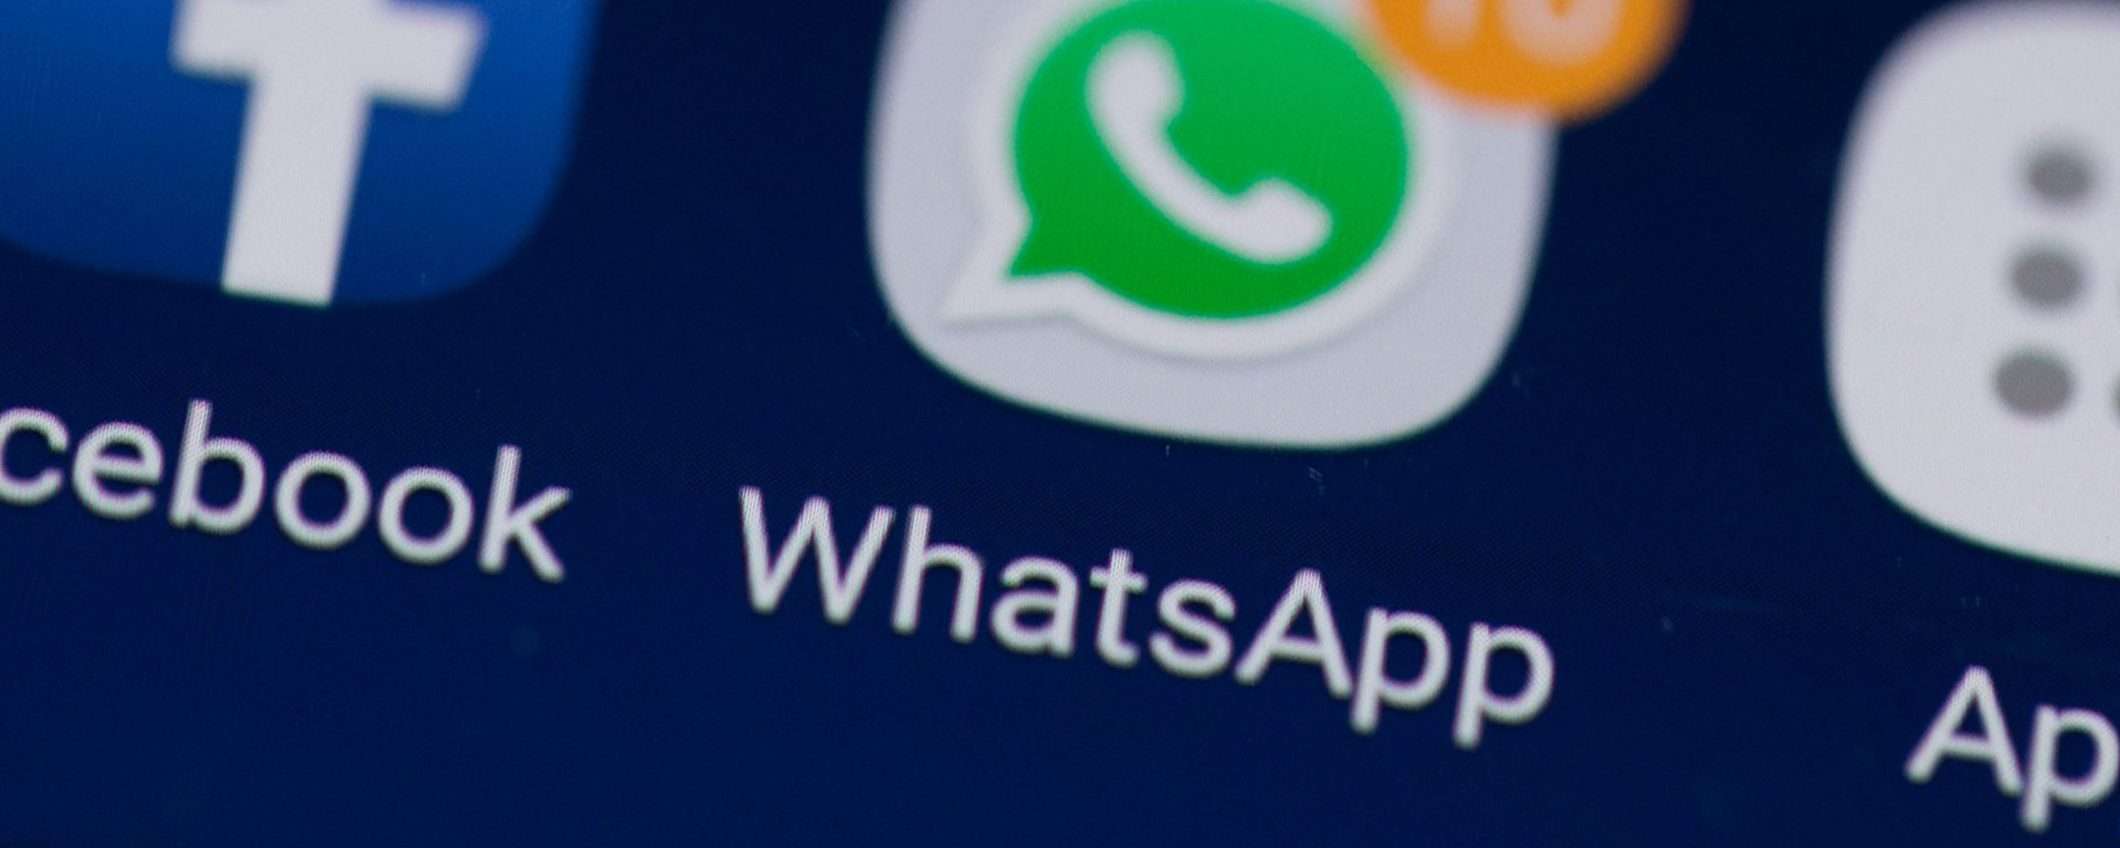 WhatsApp: niente messaggi se non accetti le modifiche